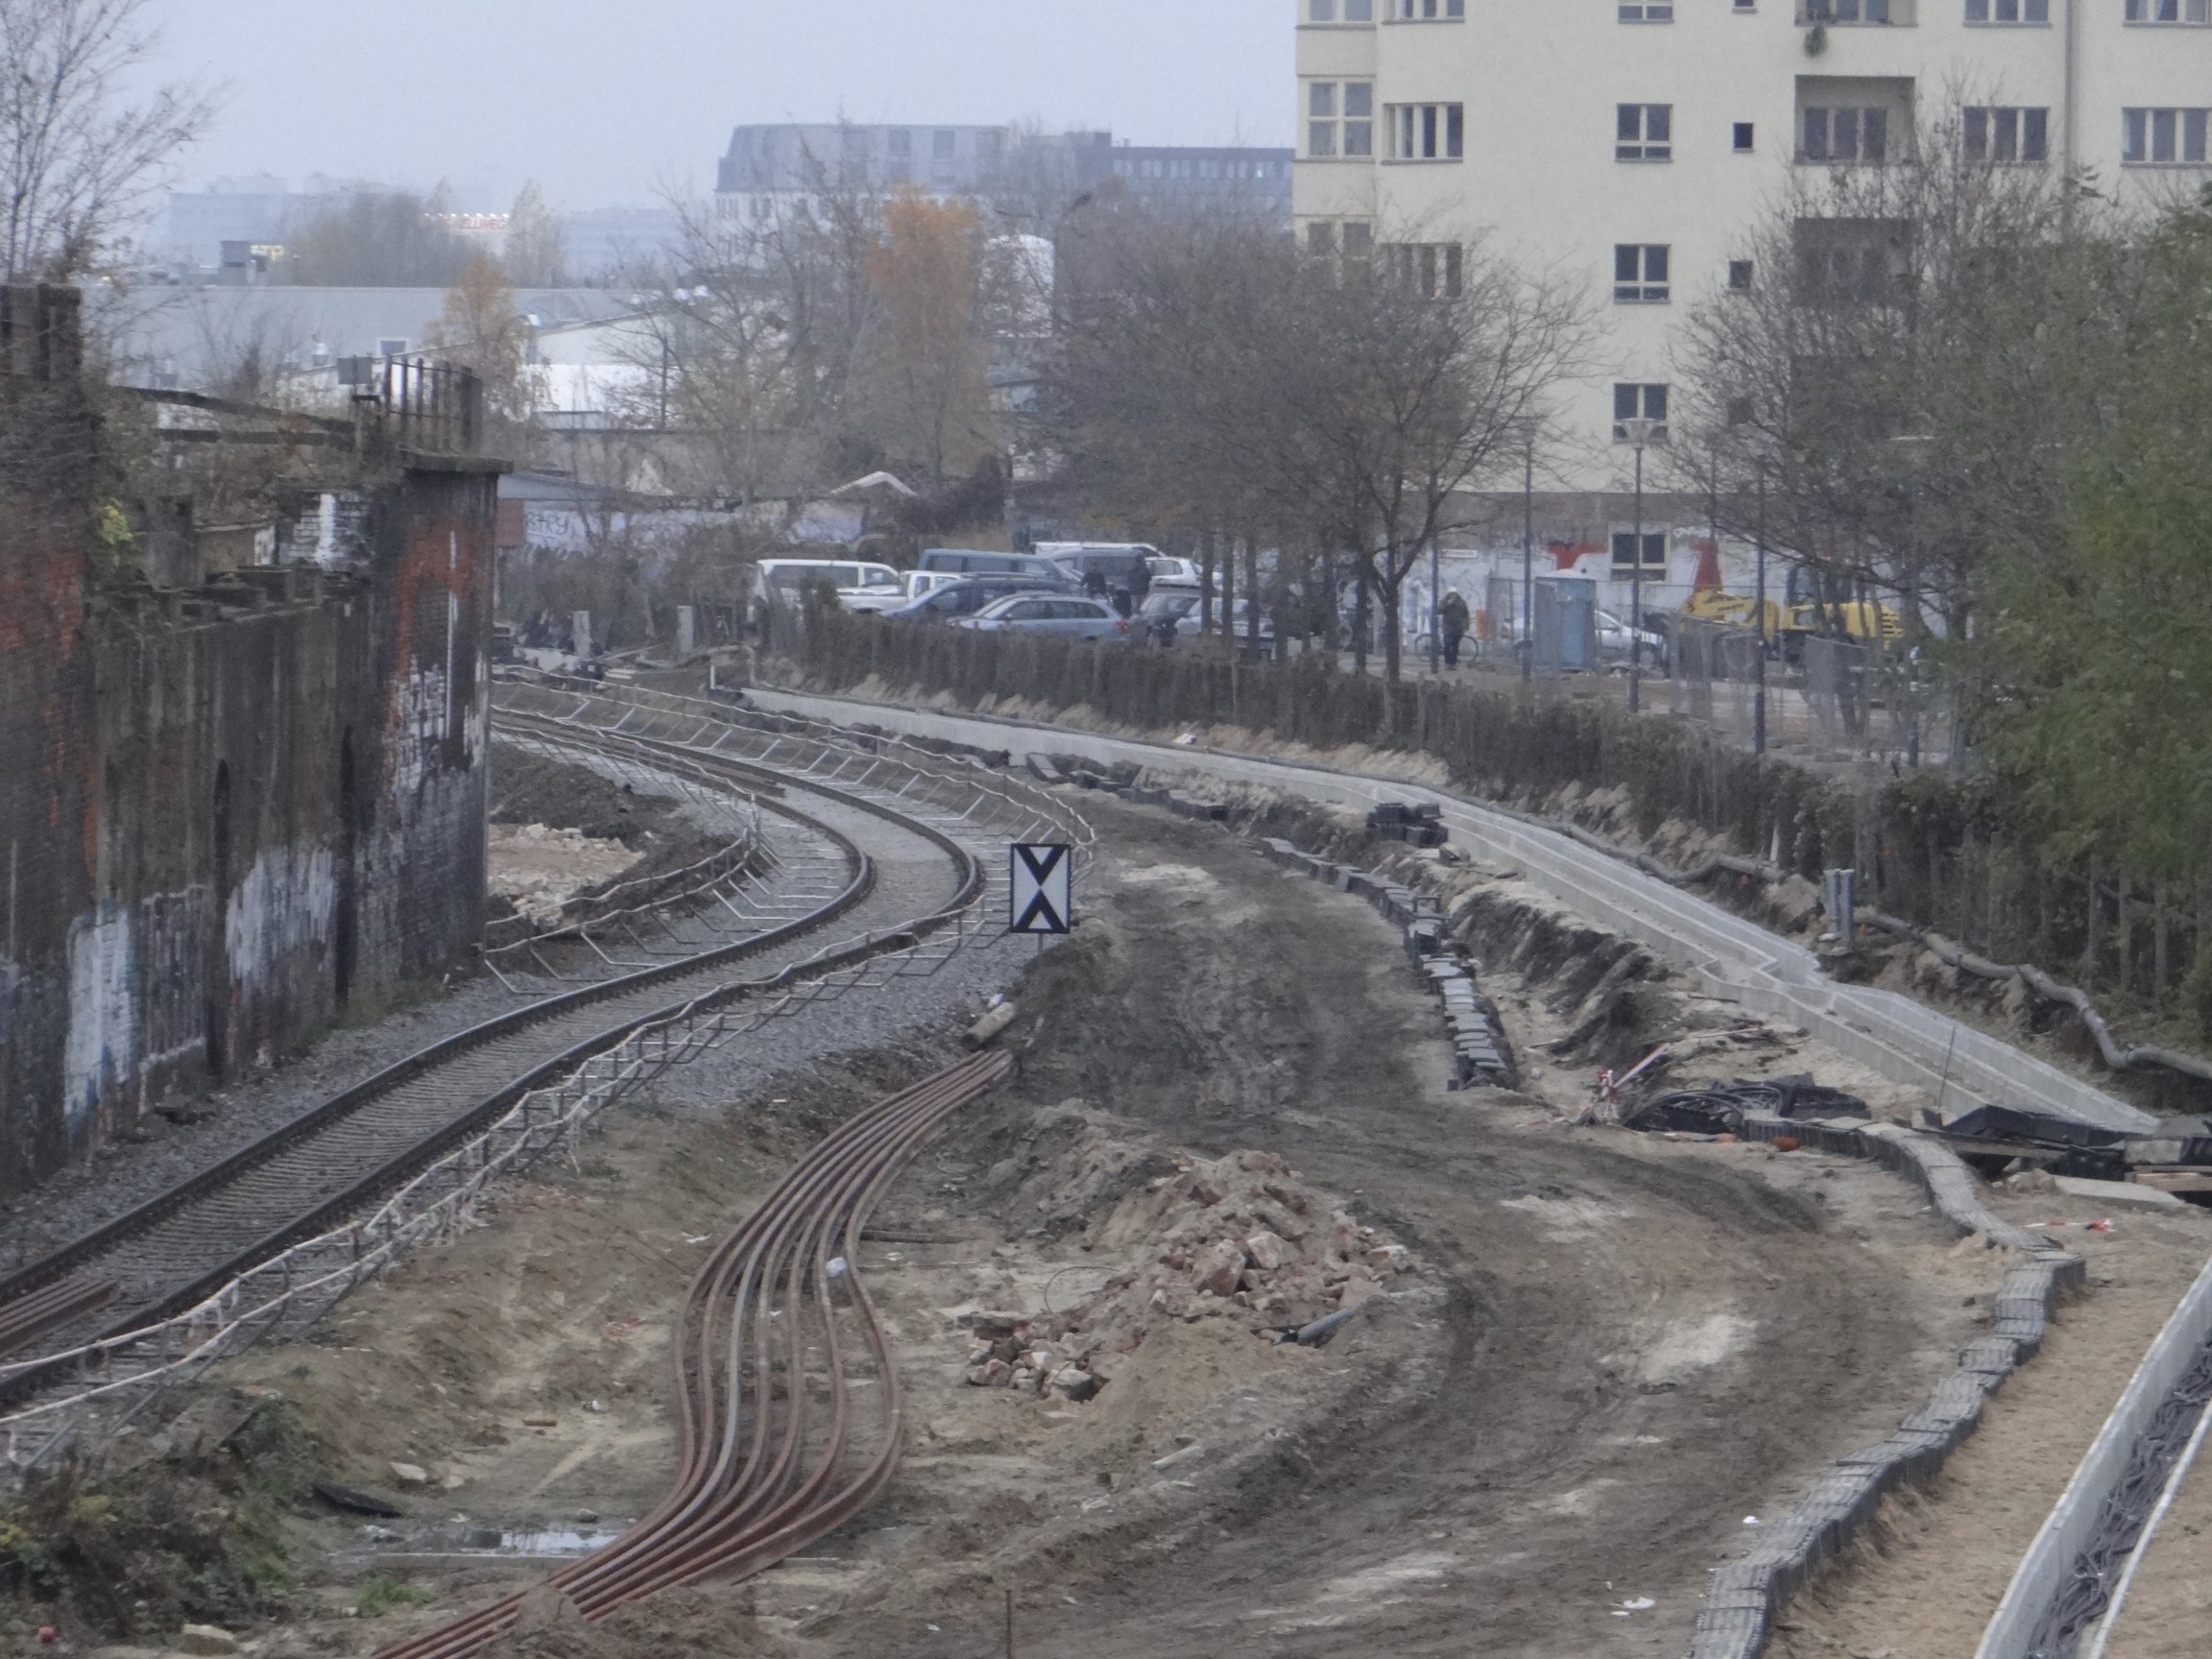 Kabeltrassen für die S-Bahn